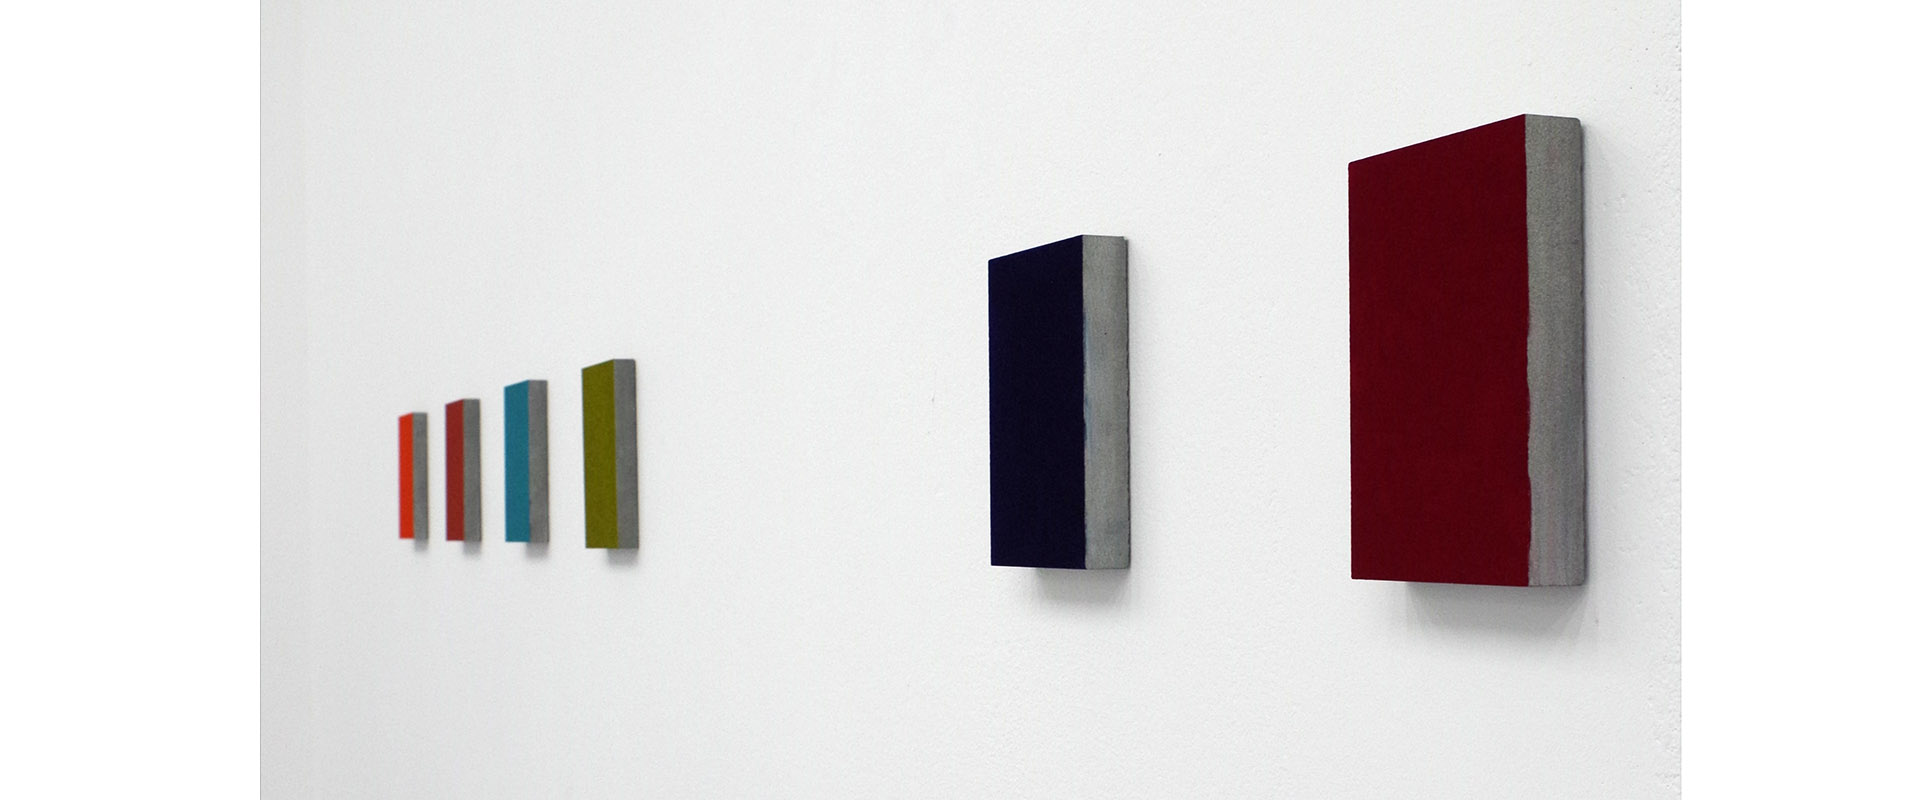 Ausstellungsansicht "Mostly Monochrome", Galerie Renate Bender 2015